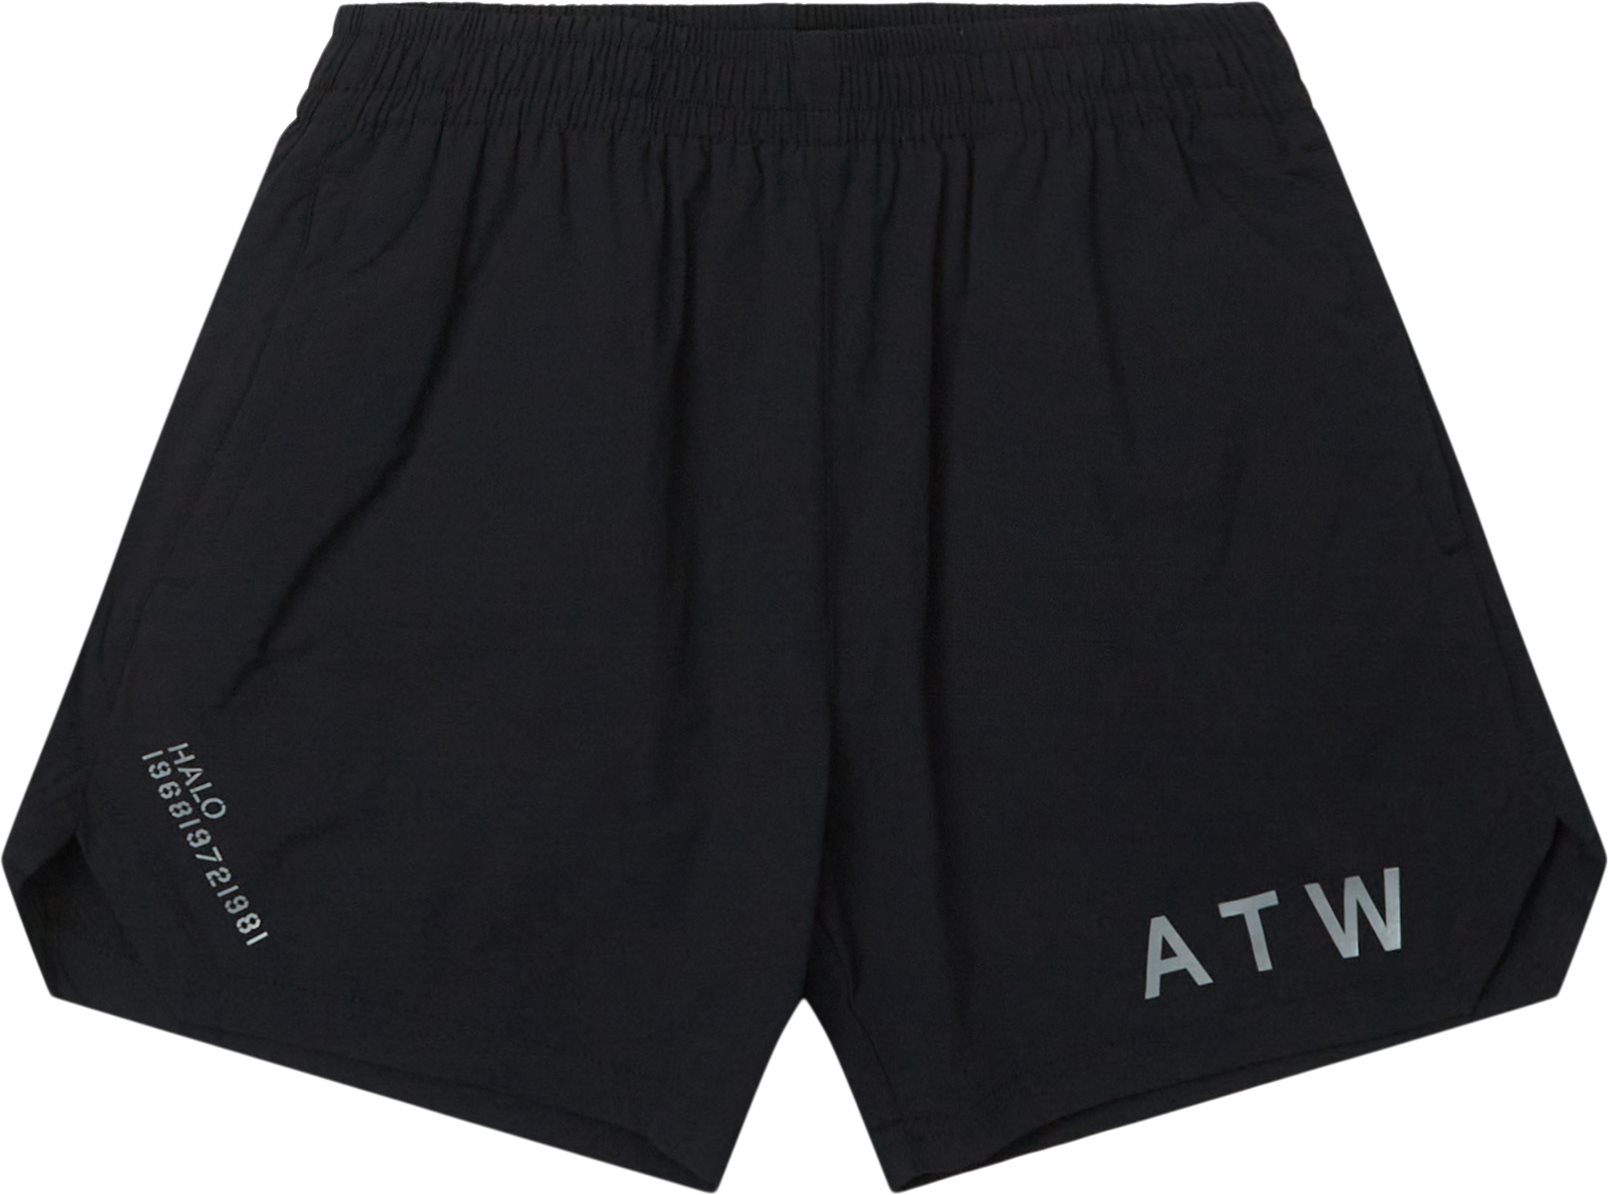 610217 Short - Shorts - Regular fit - Black